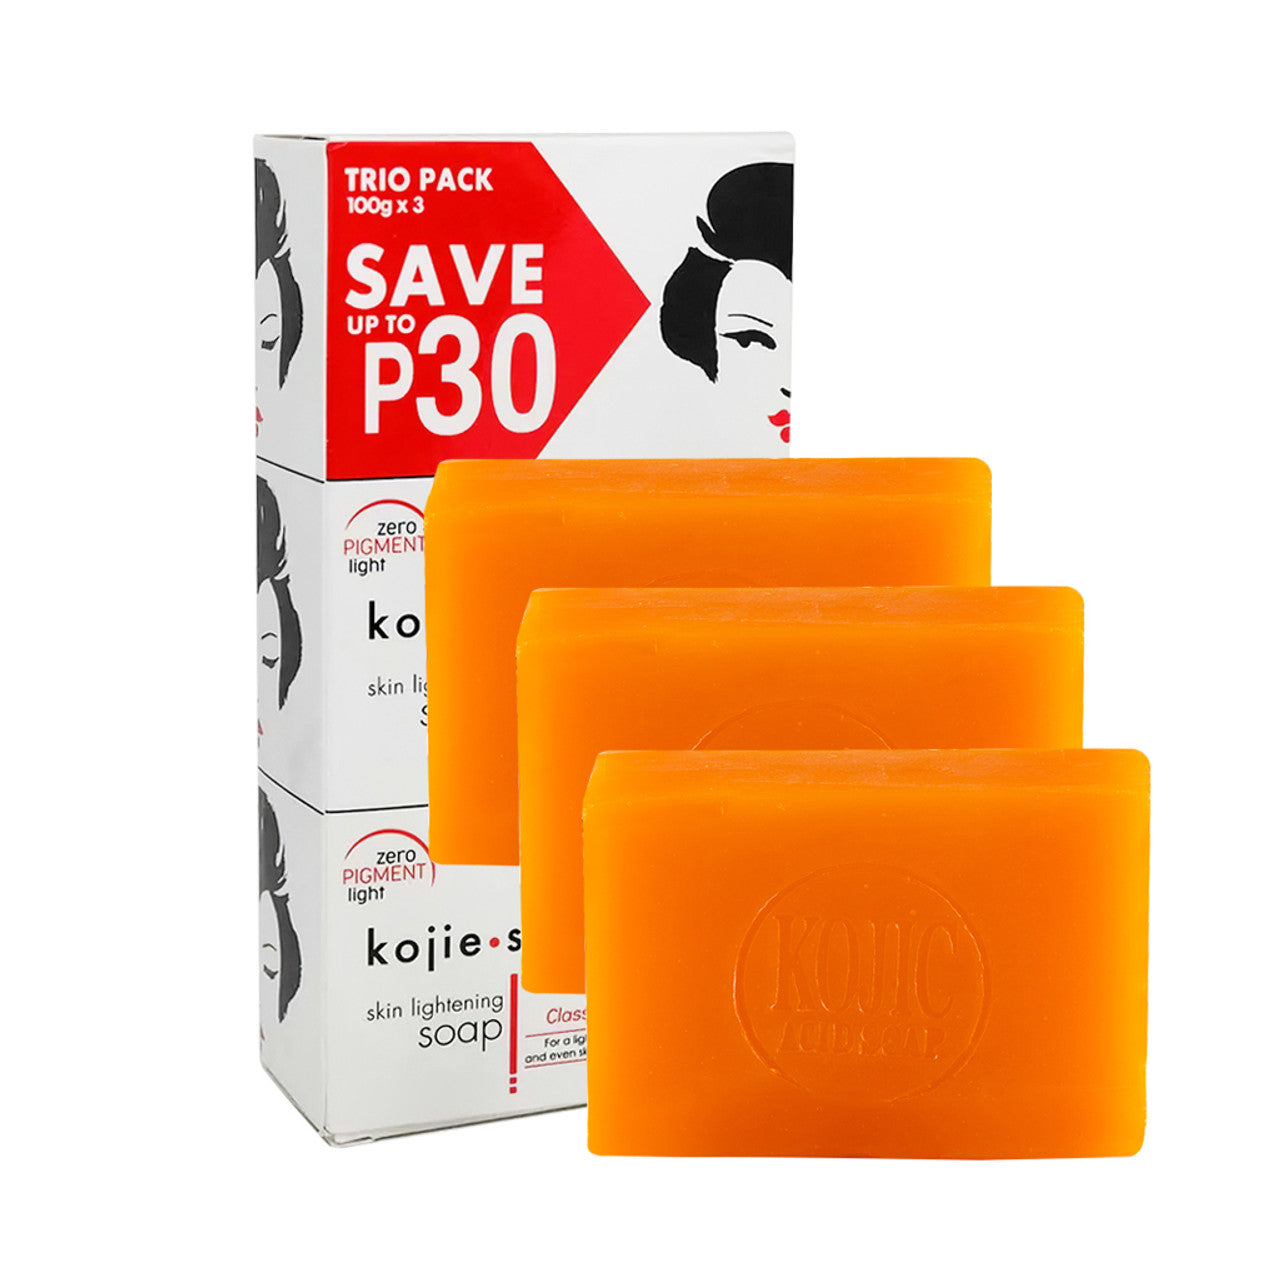 Kojie San Skin Lightening Kojic Acid Soap - 3 bar - 100g size